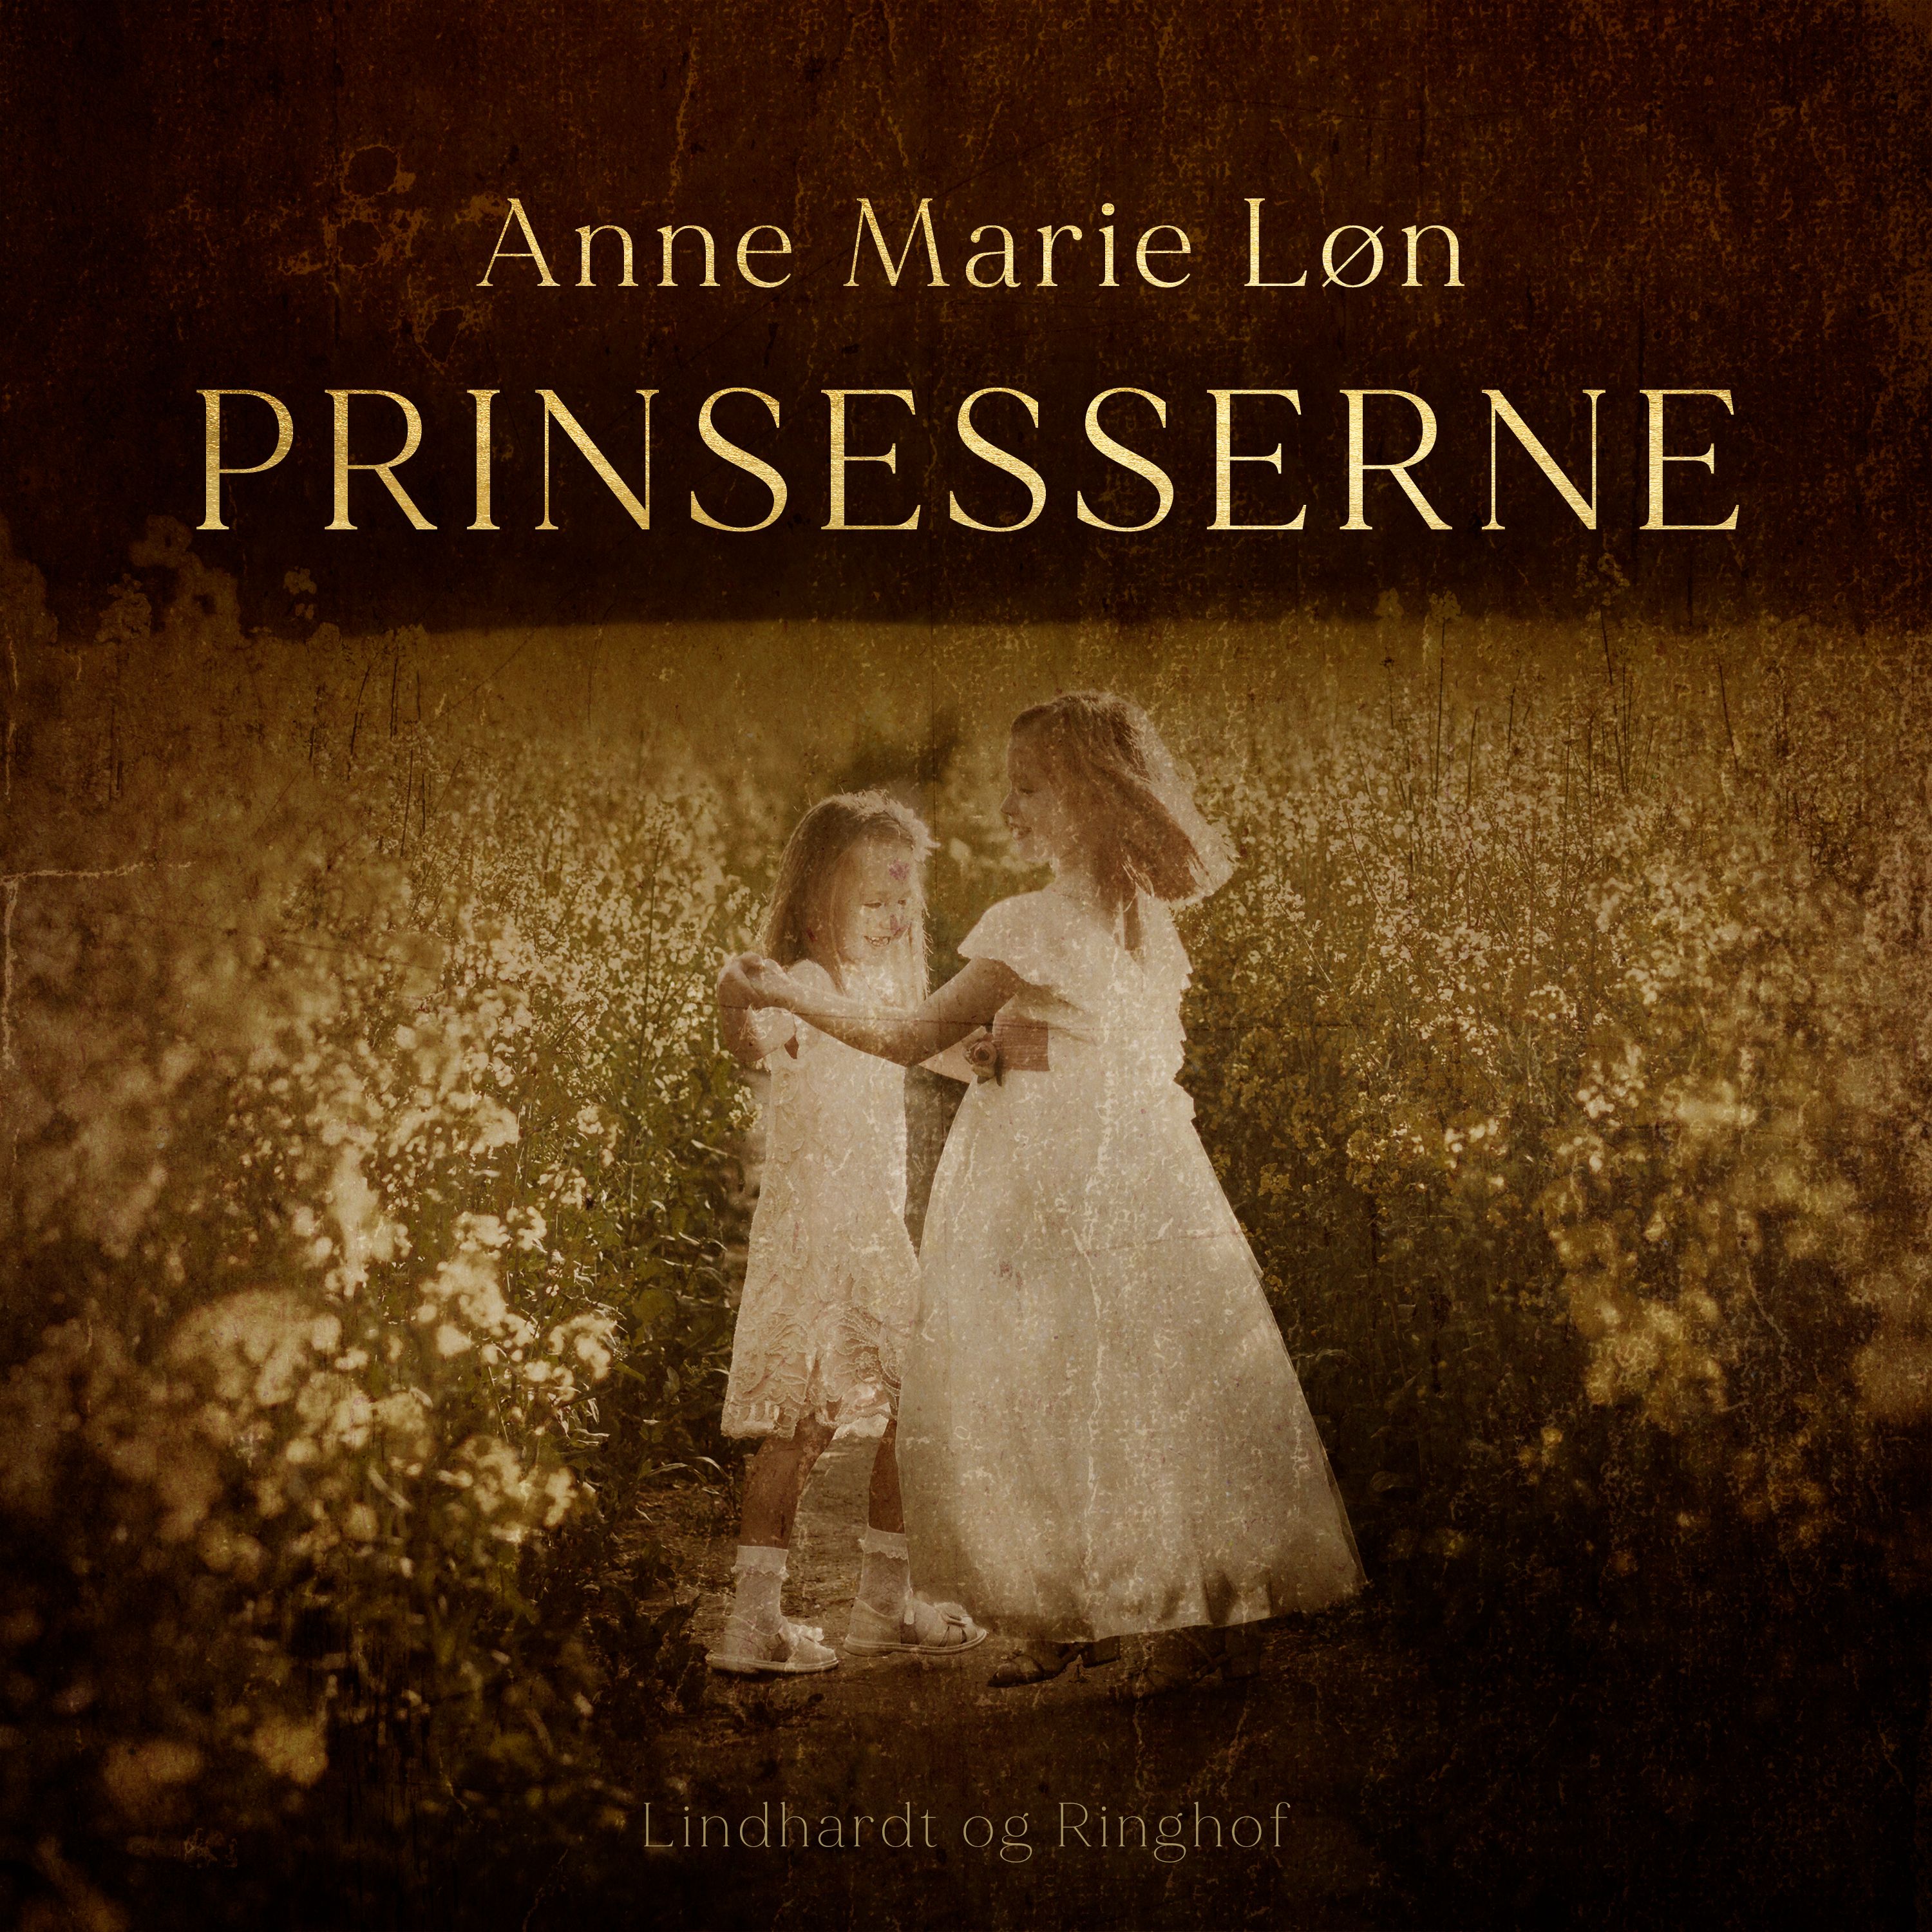 Prinsesserne, audiobook by Anne Marie Løn